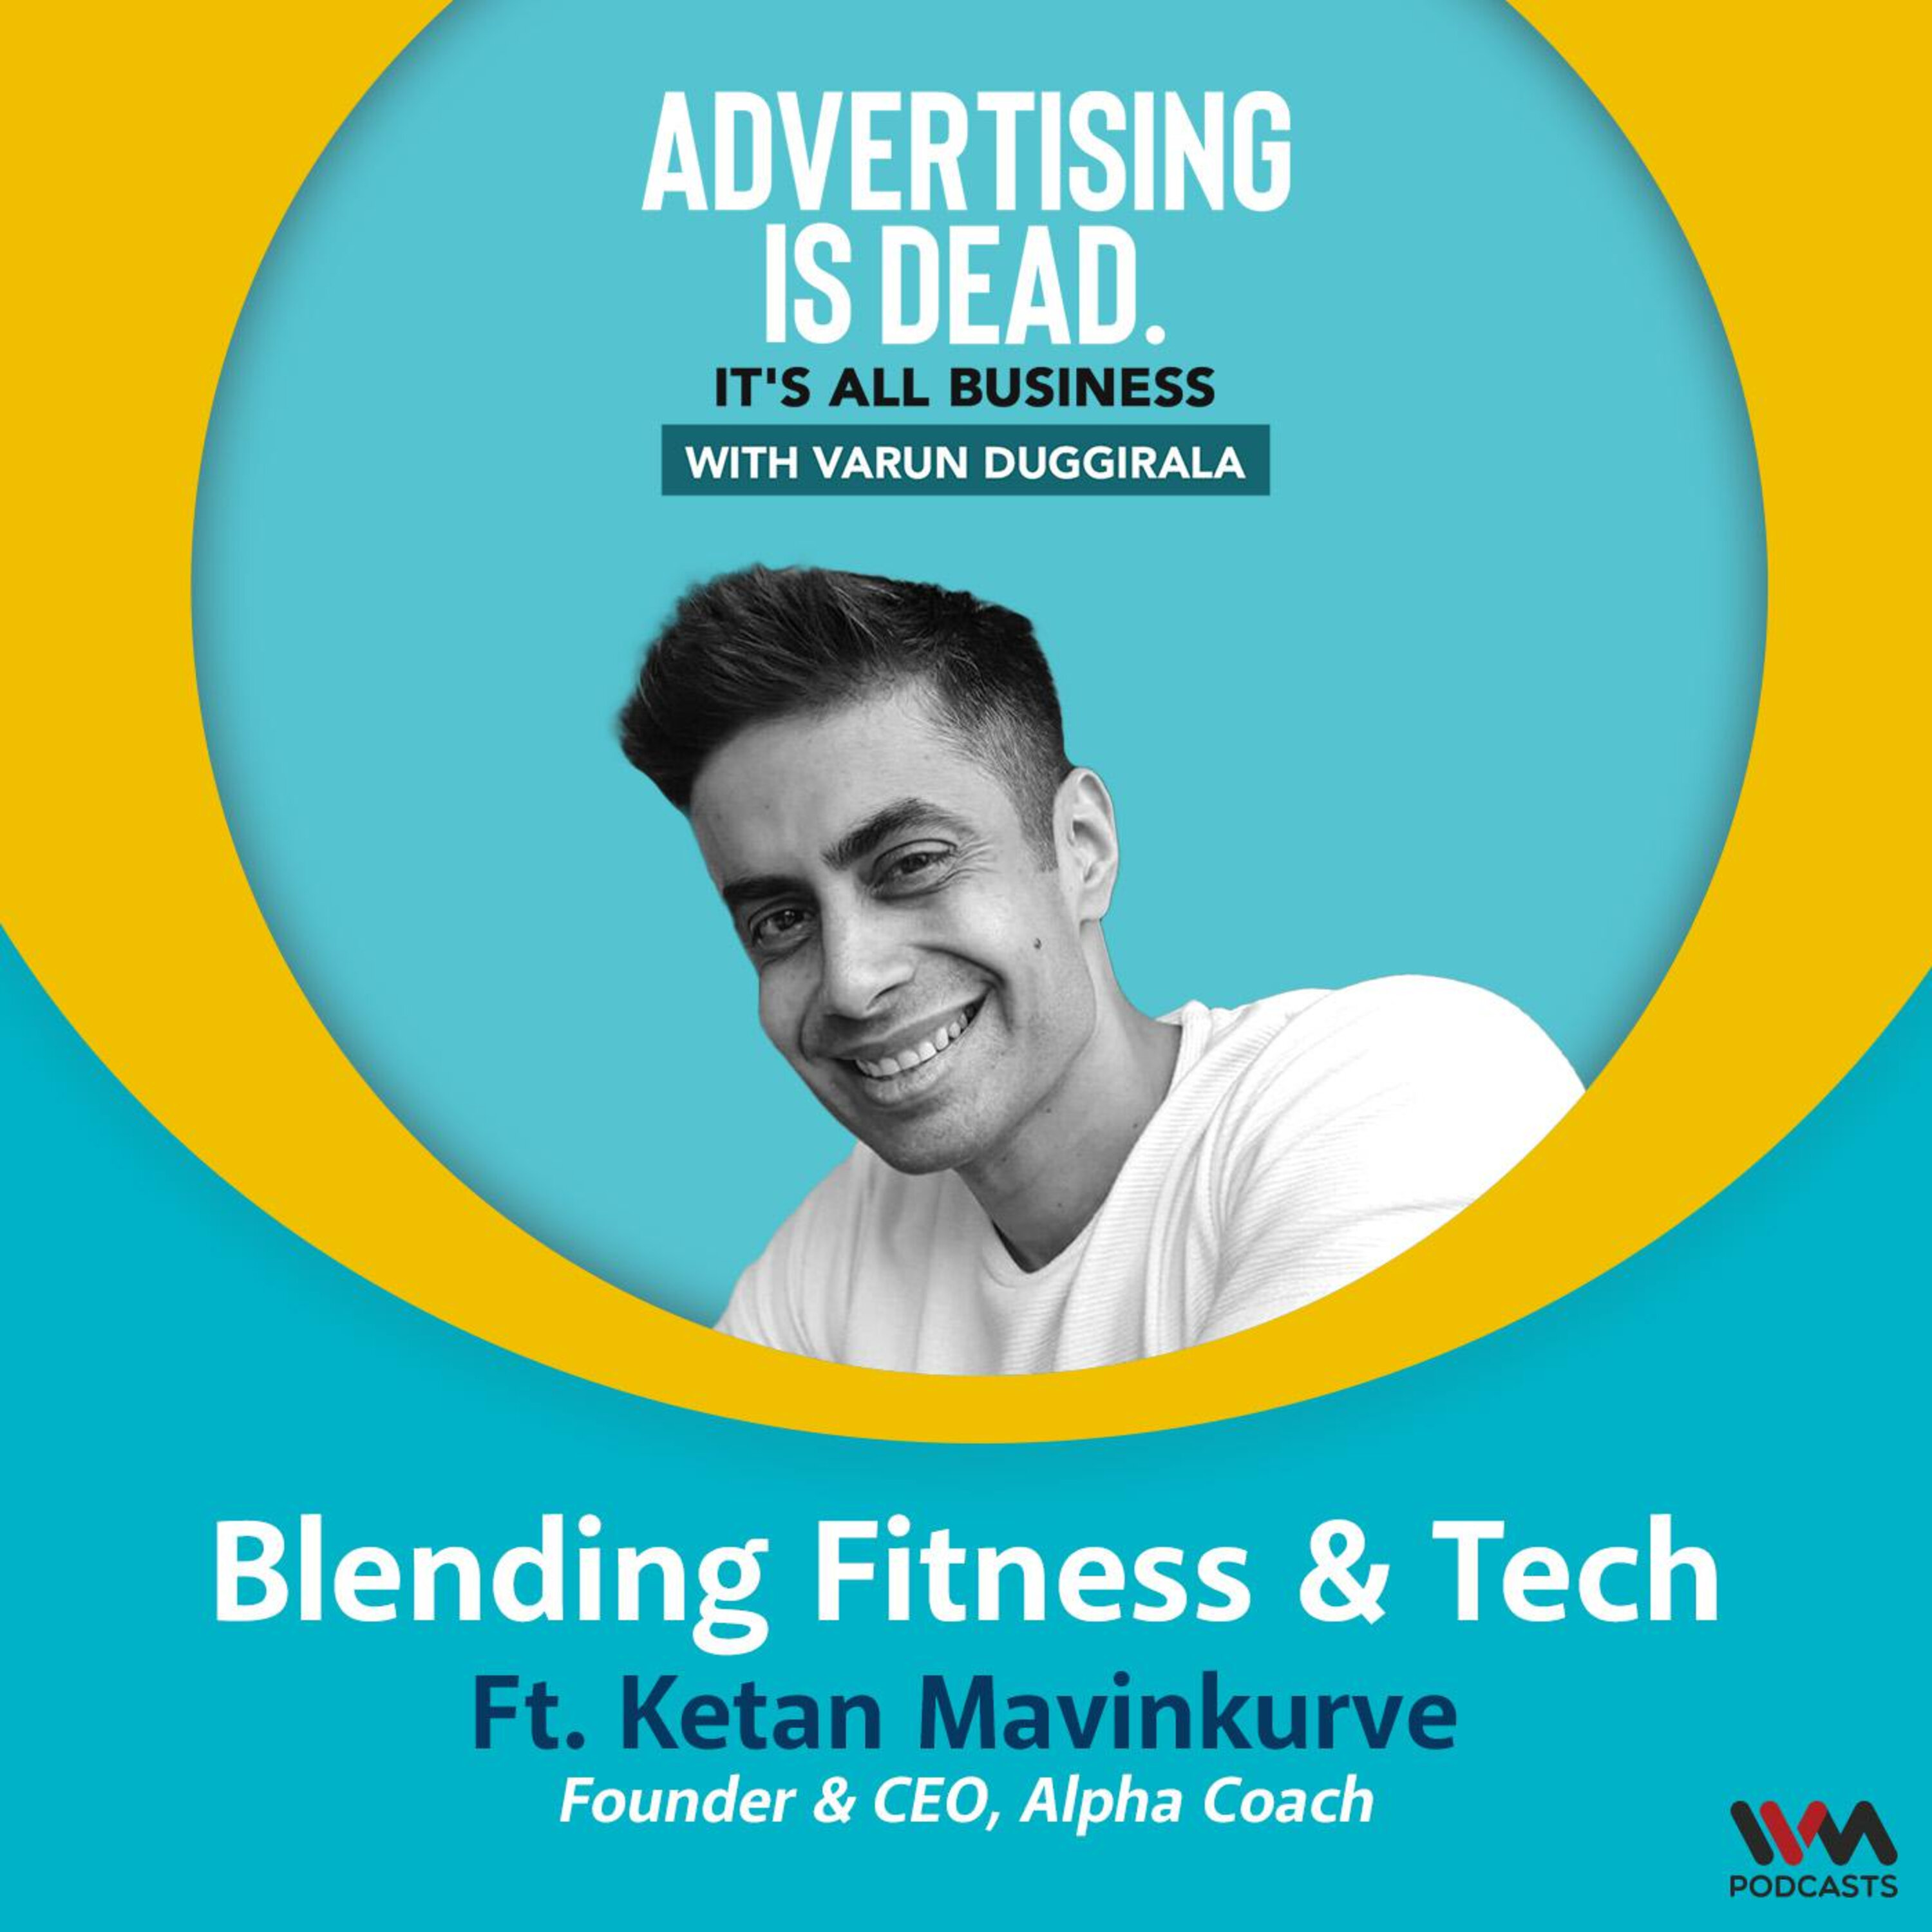 Blending Fitness & Tech with Ketan Mavinkurve